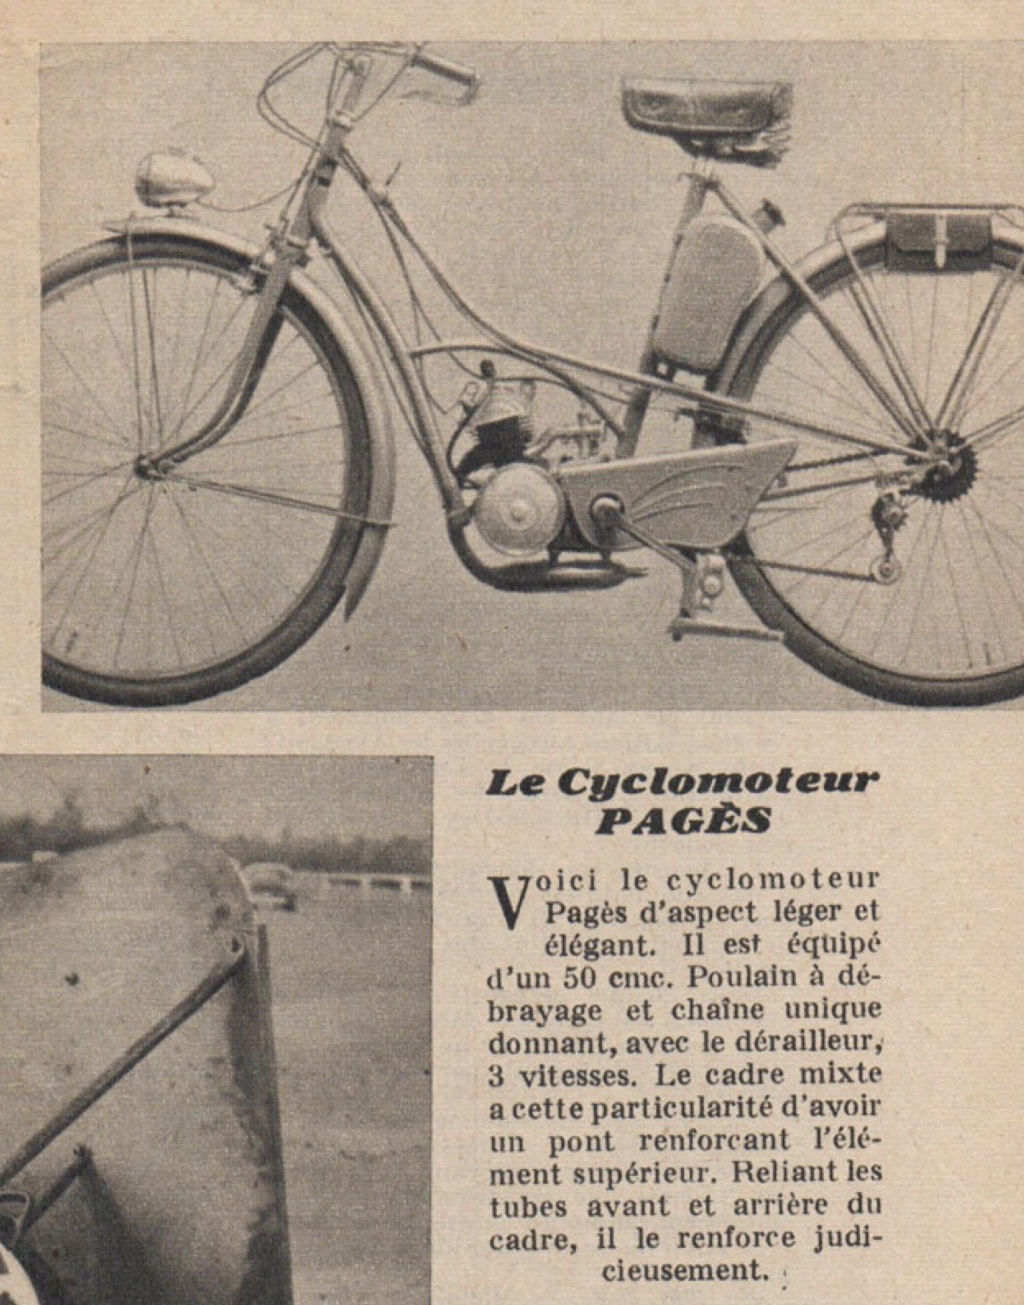 Cyclos Helyett et Pagès (?) A000722